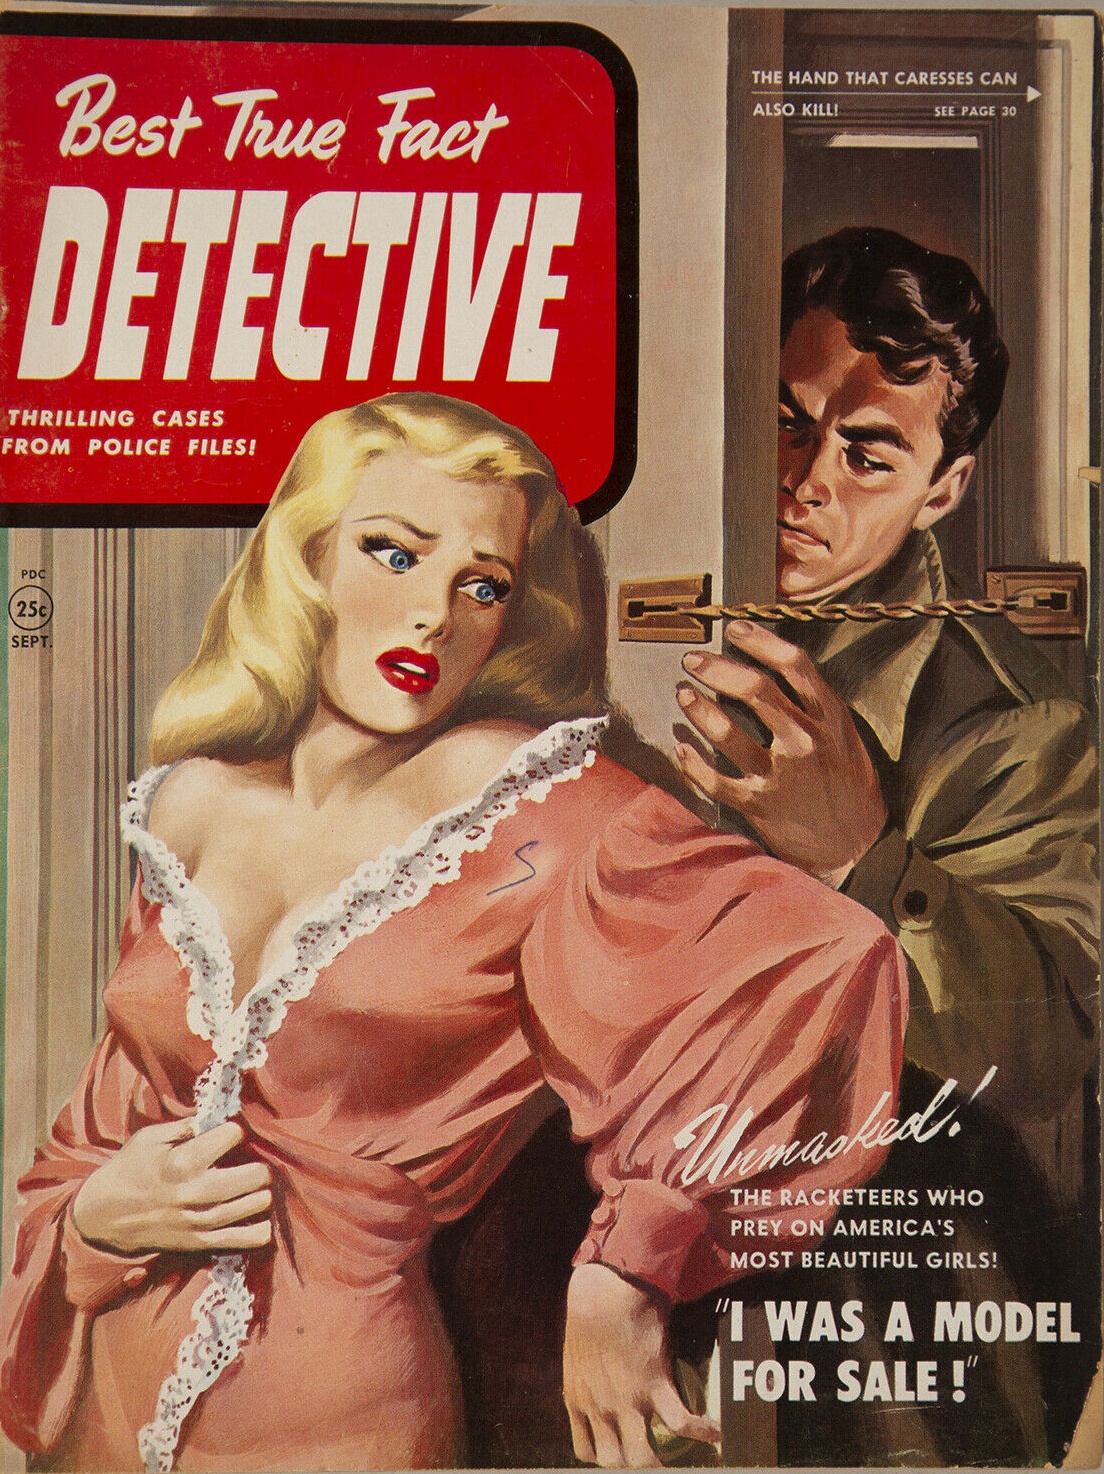 Sept.-Oct. 1950 Best True Fact Detective